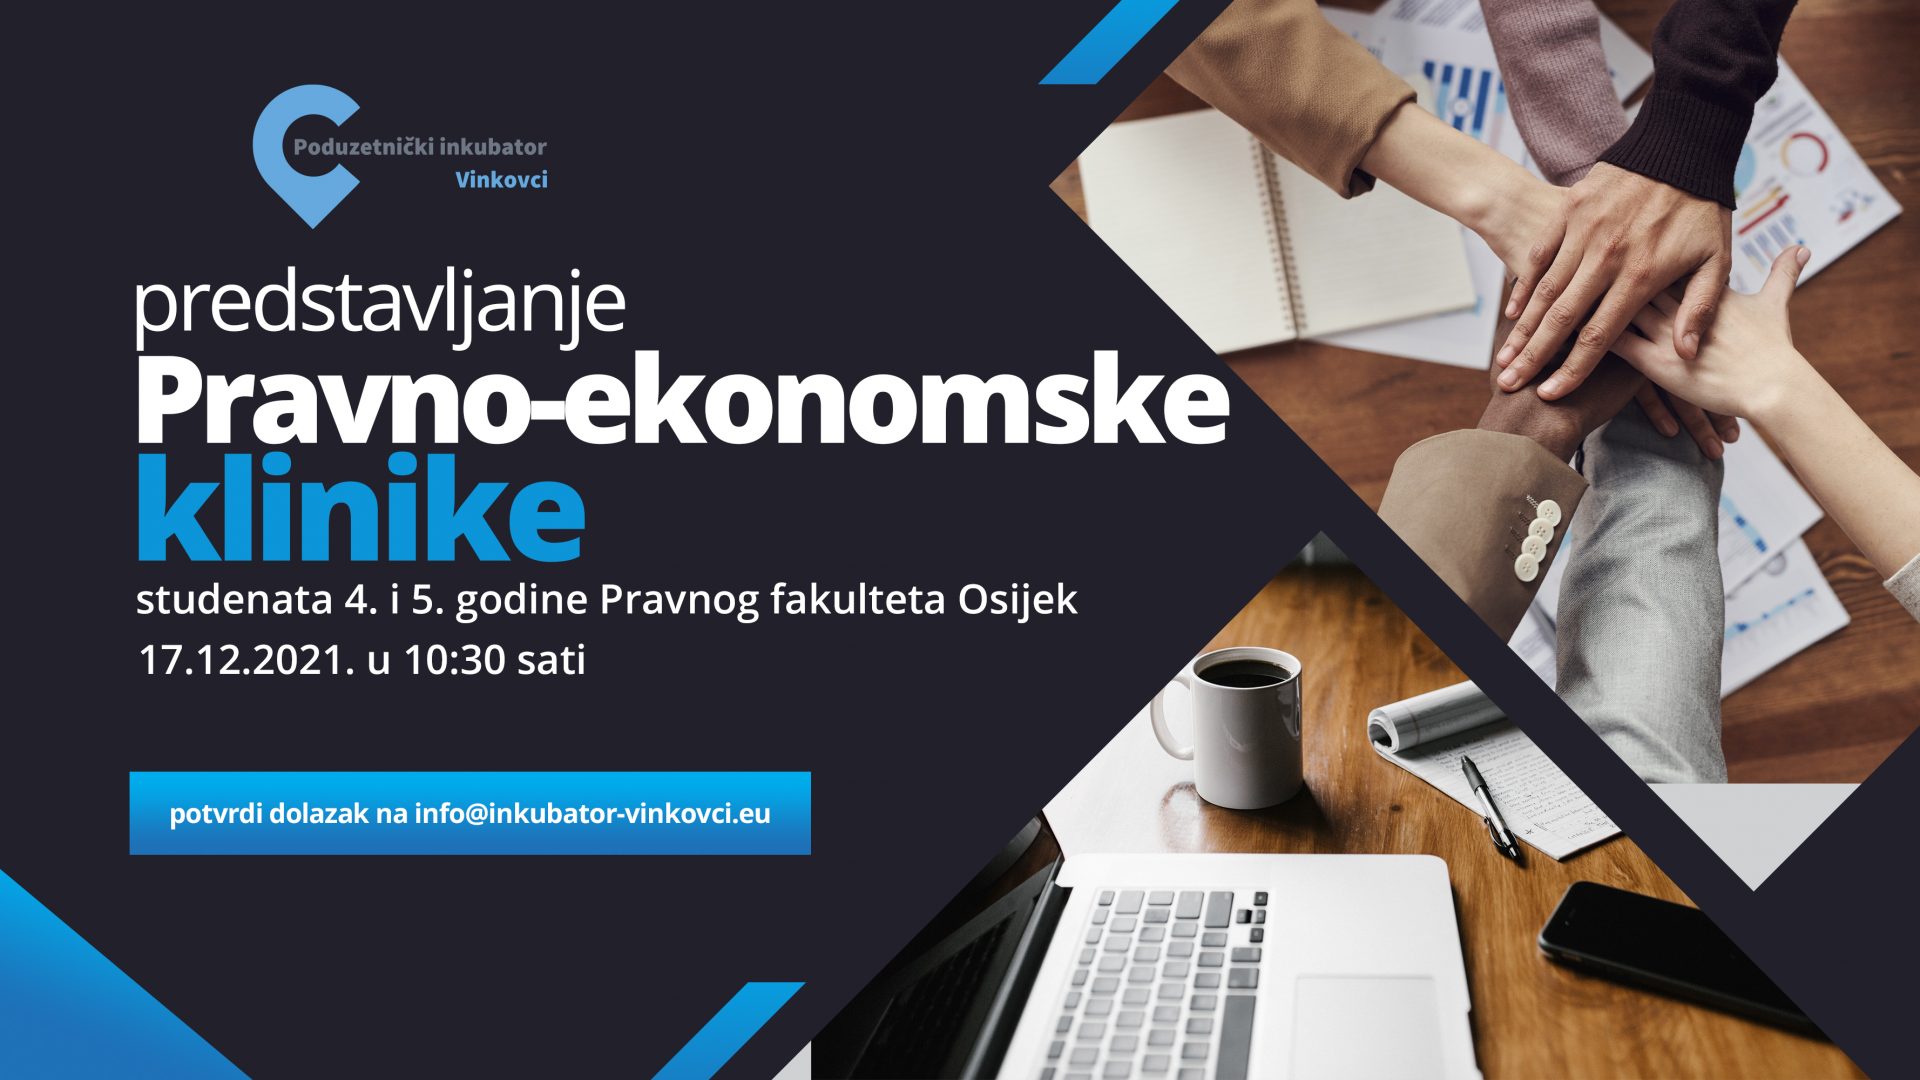 Predstavljanje Pravno-ekonomske klinike studenata 4. i 5. godine Pravnog fakulteta Osijek